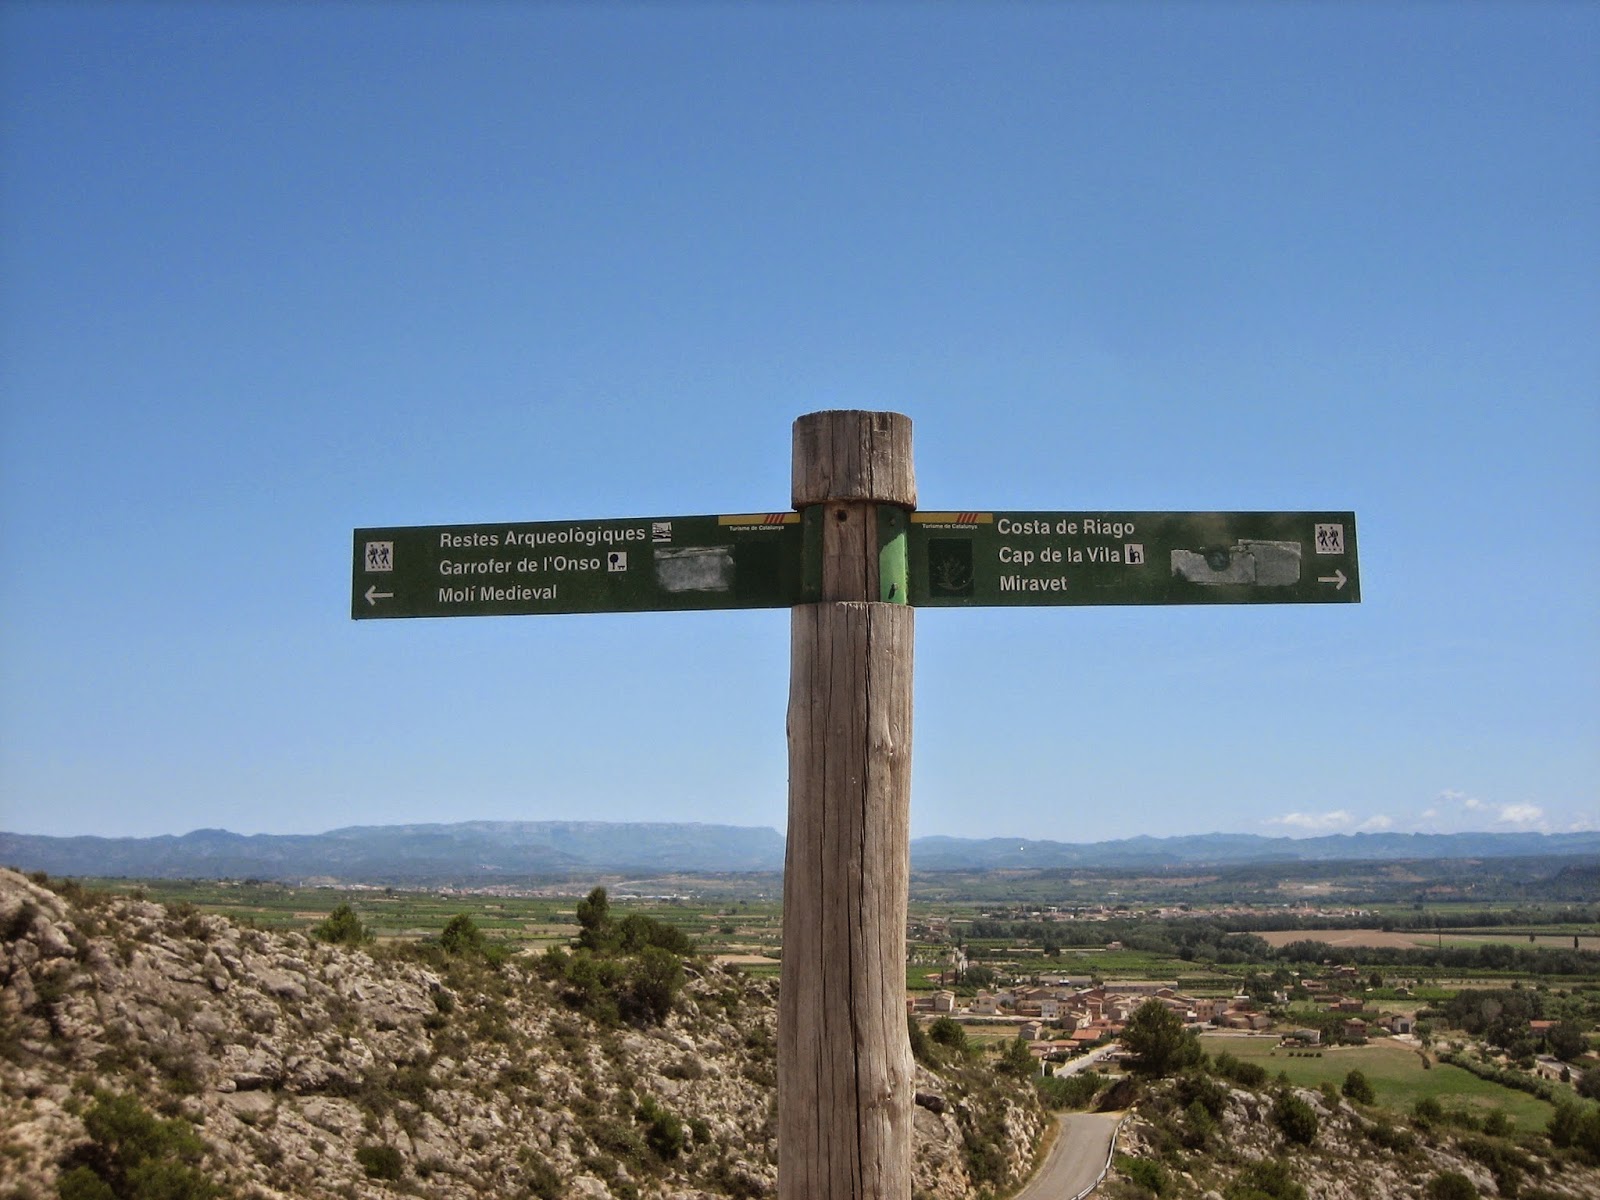 Rutas por España - Blogs de España - Miravet - Calaceite - Cretas (4)